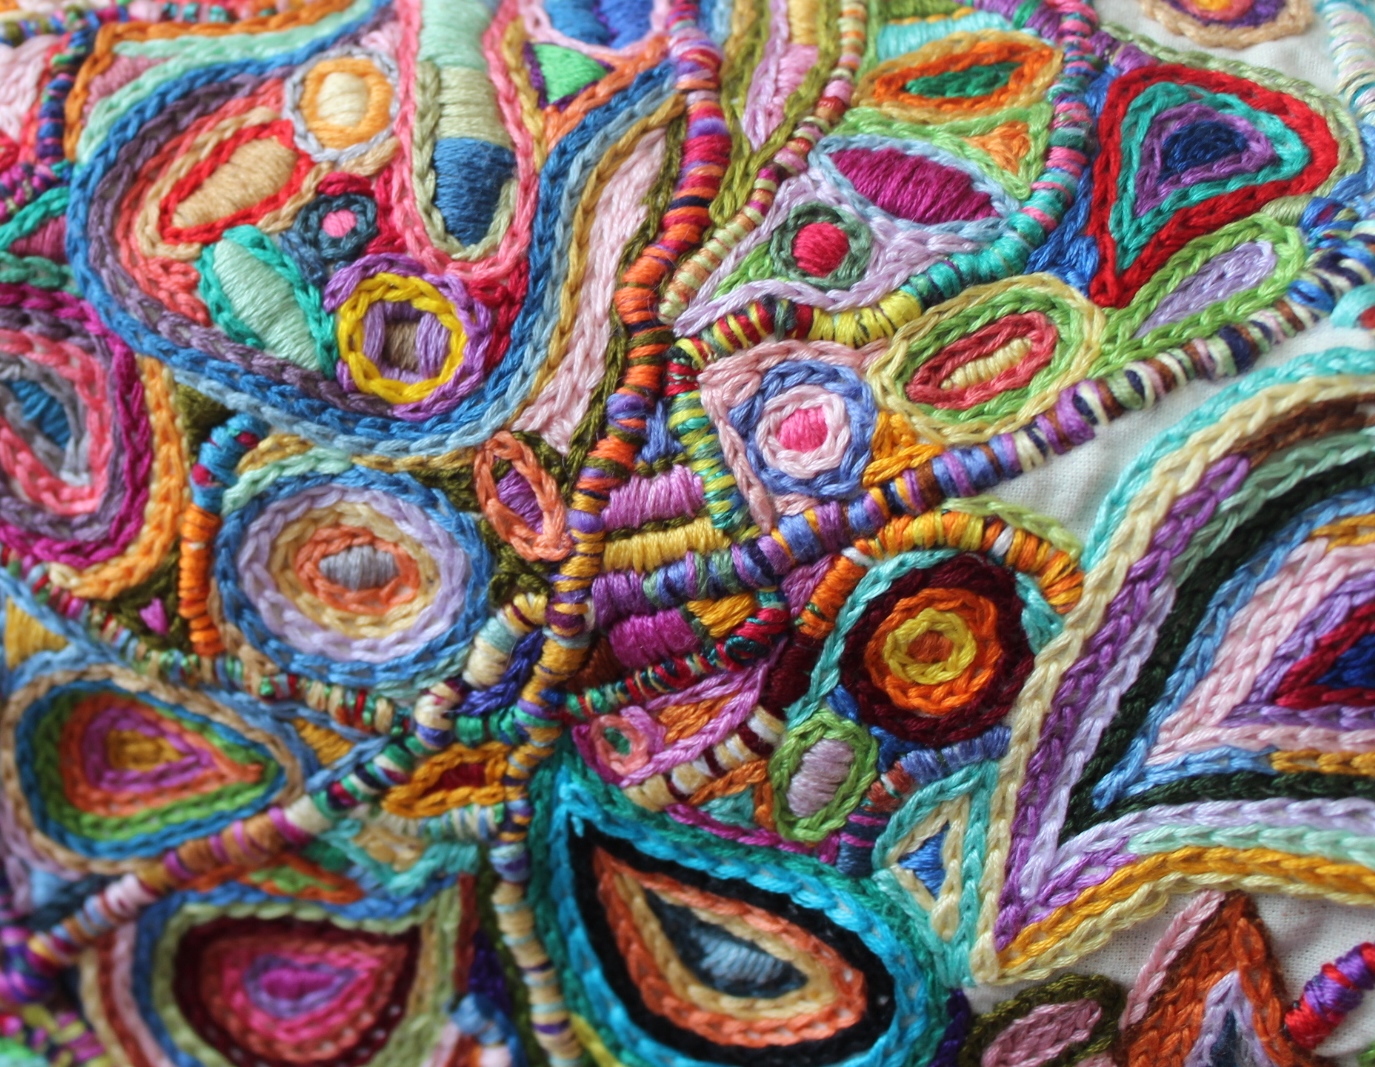 Stitching Always: June 2013